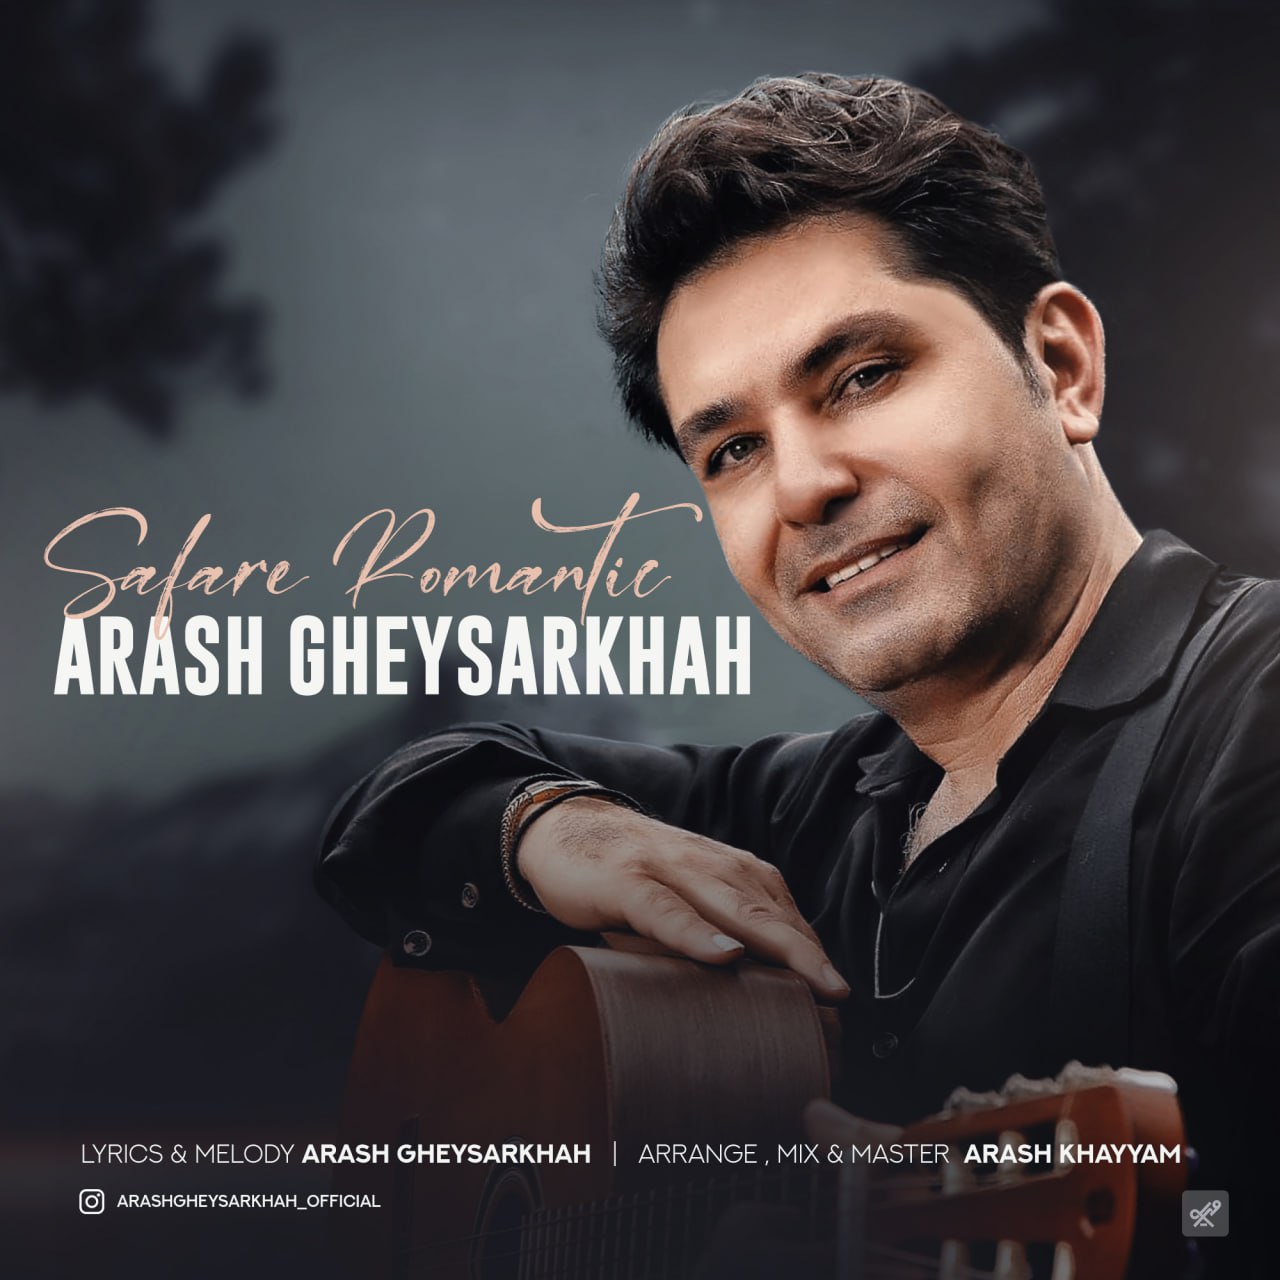 Arash Gheysarkhah – Safare Romantic